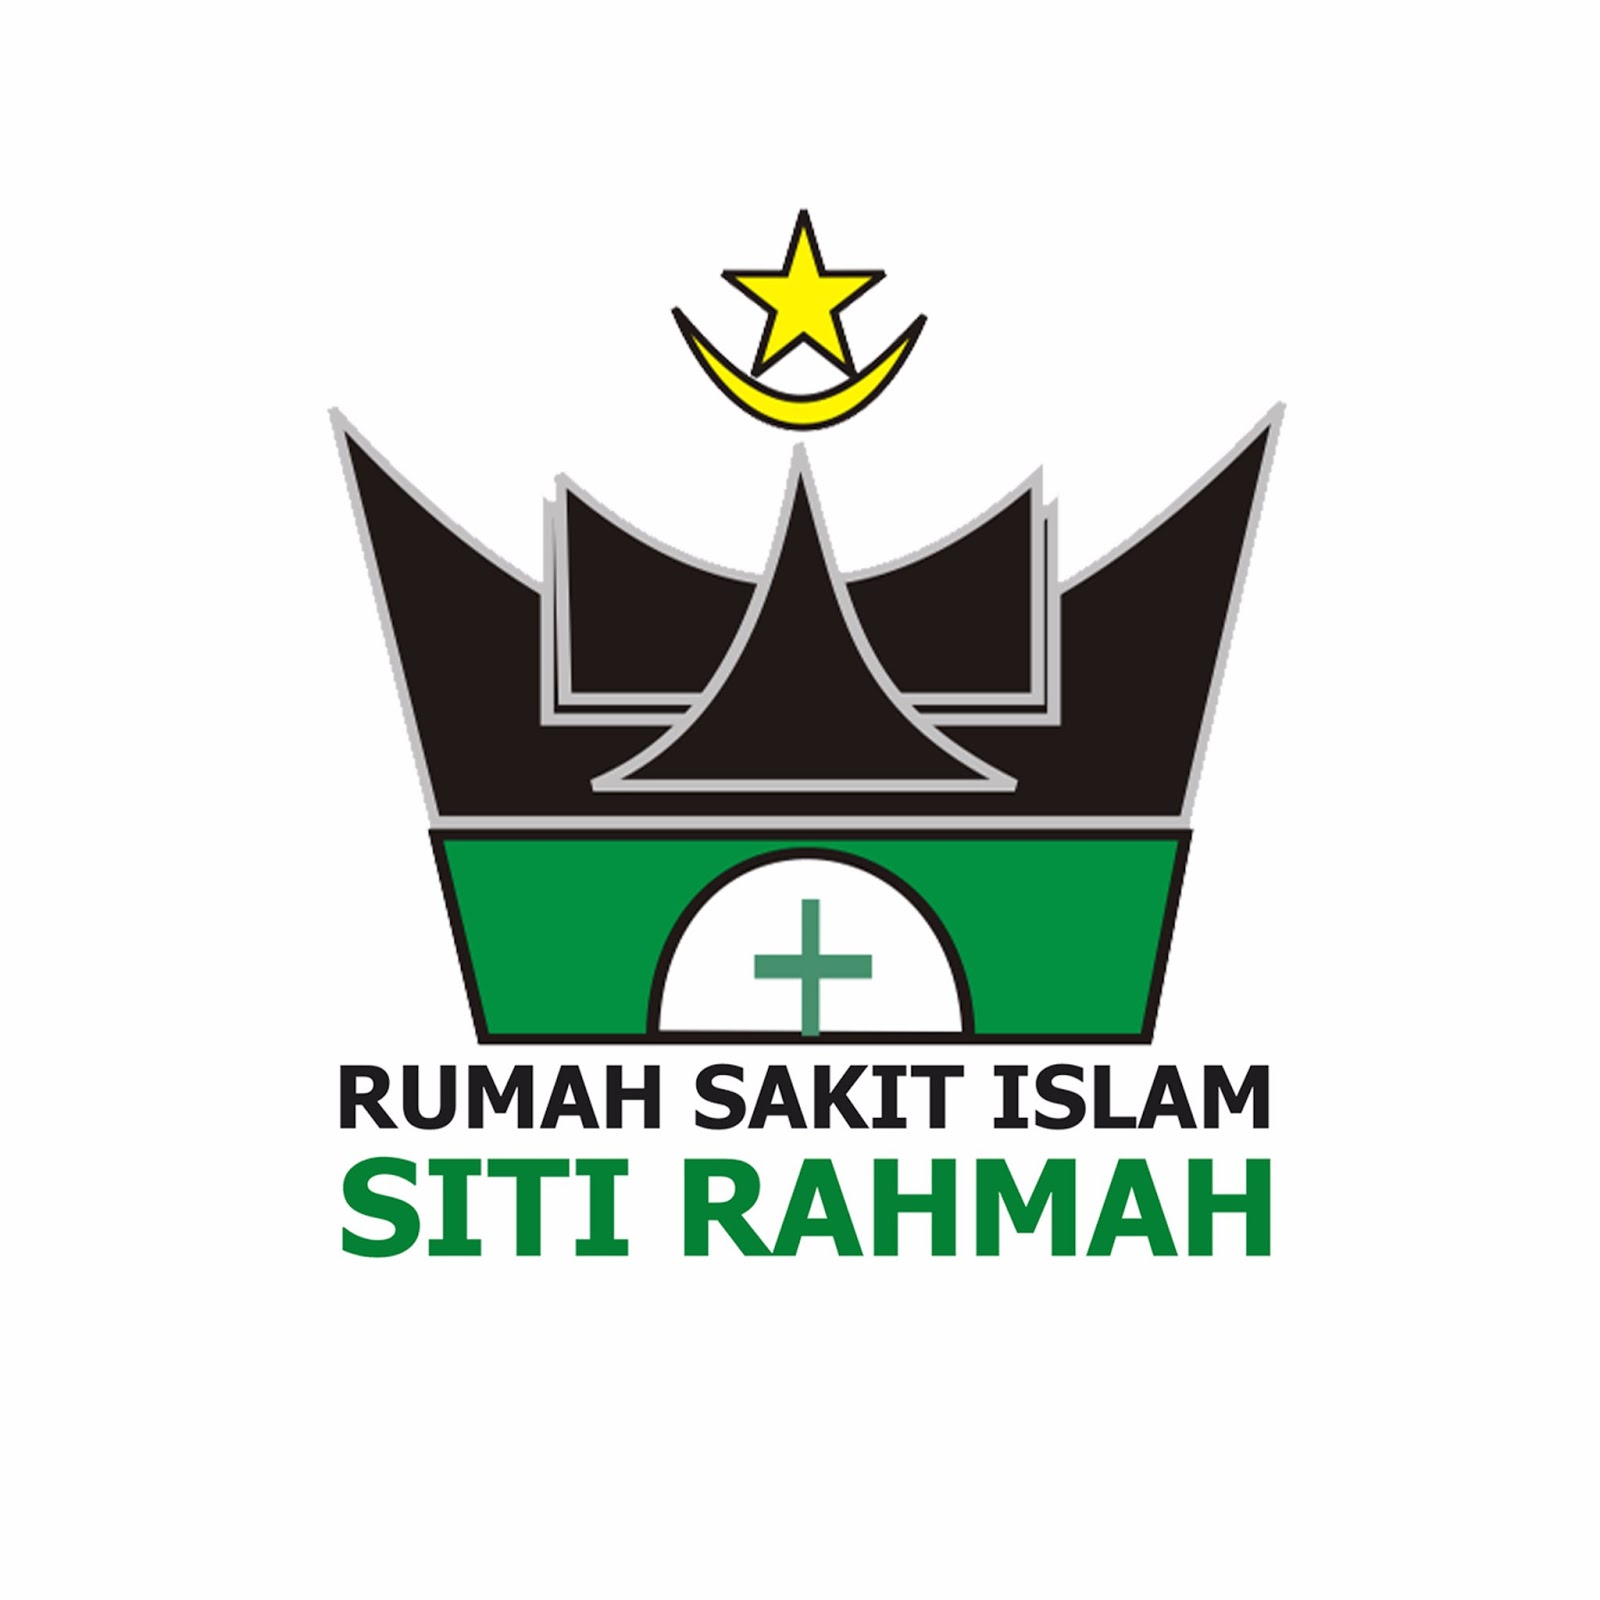 Lowongan Pekerjaan Rumah Sakit Islam Siti Rahmah - RuanganKerja